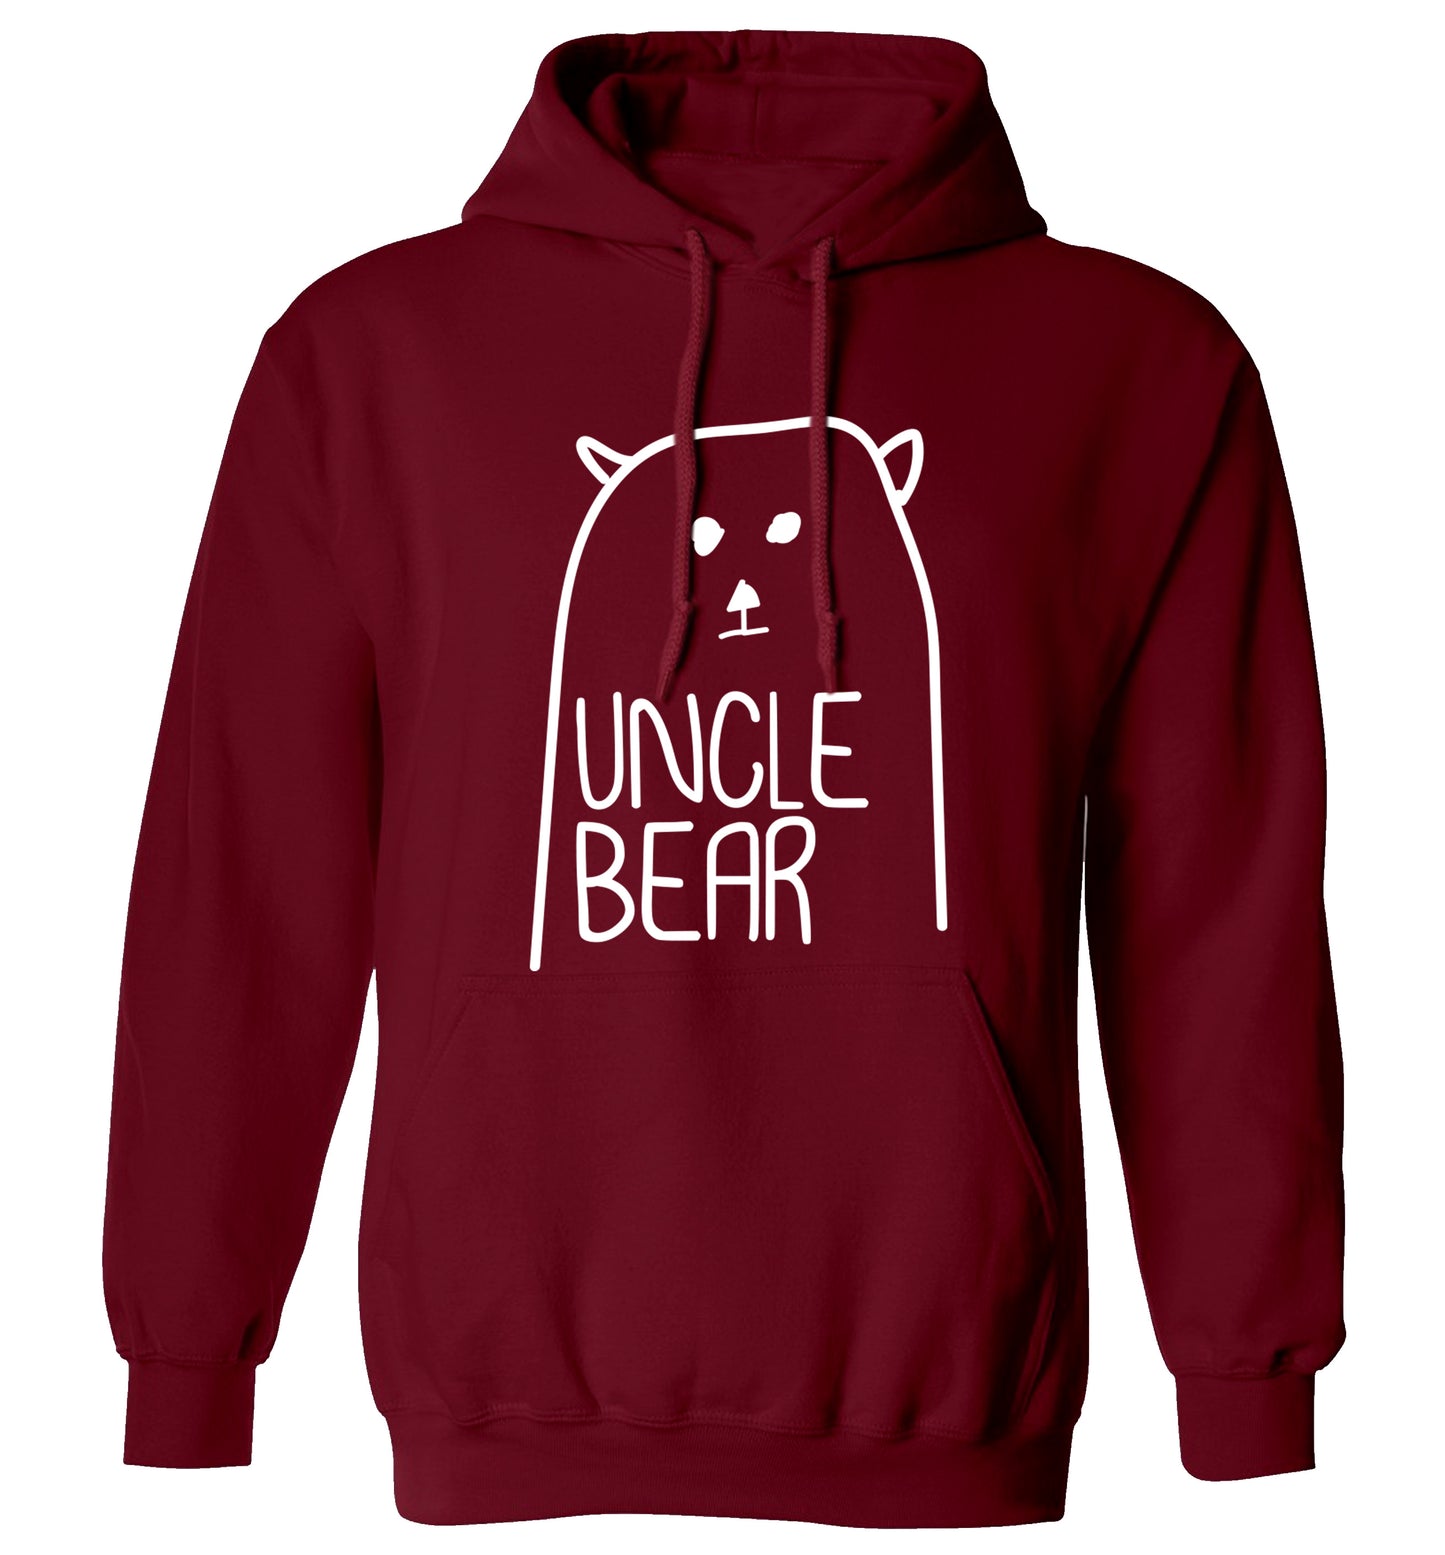 Uncle bear adults unisex maroon hoodie 2XL